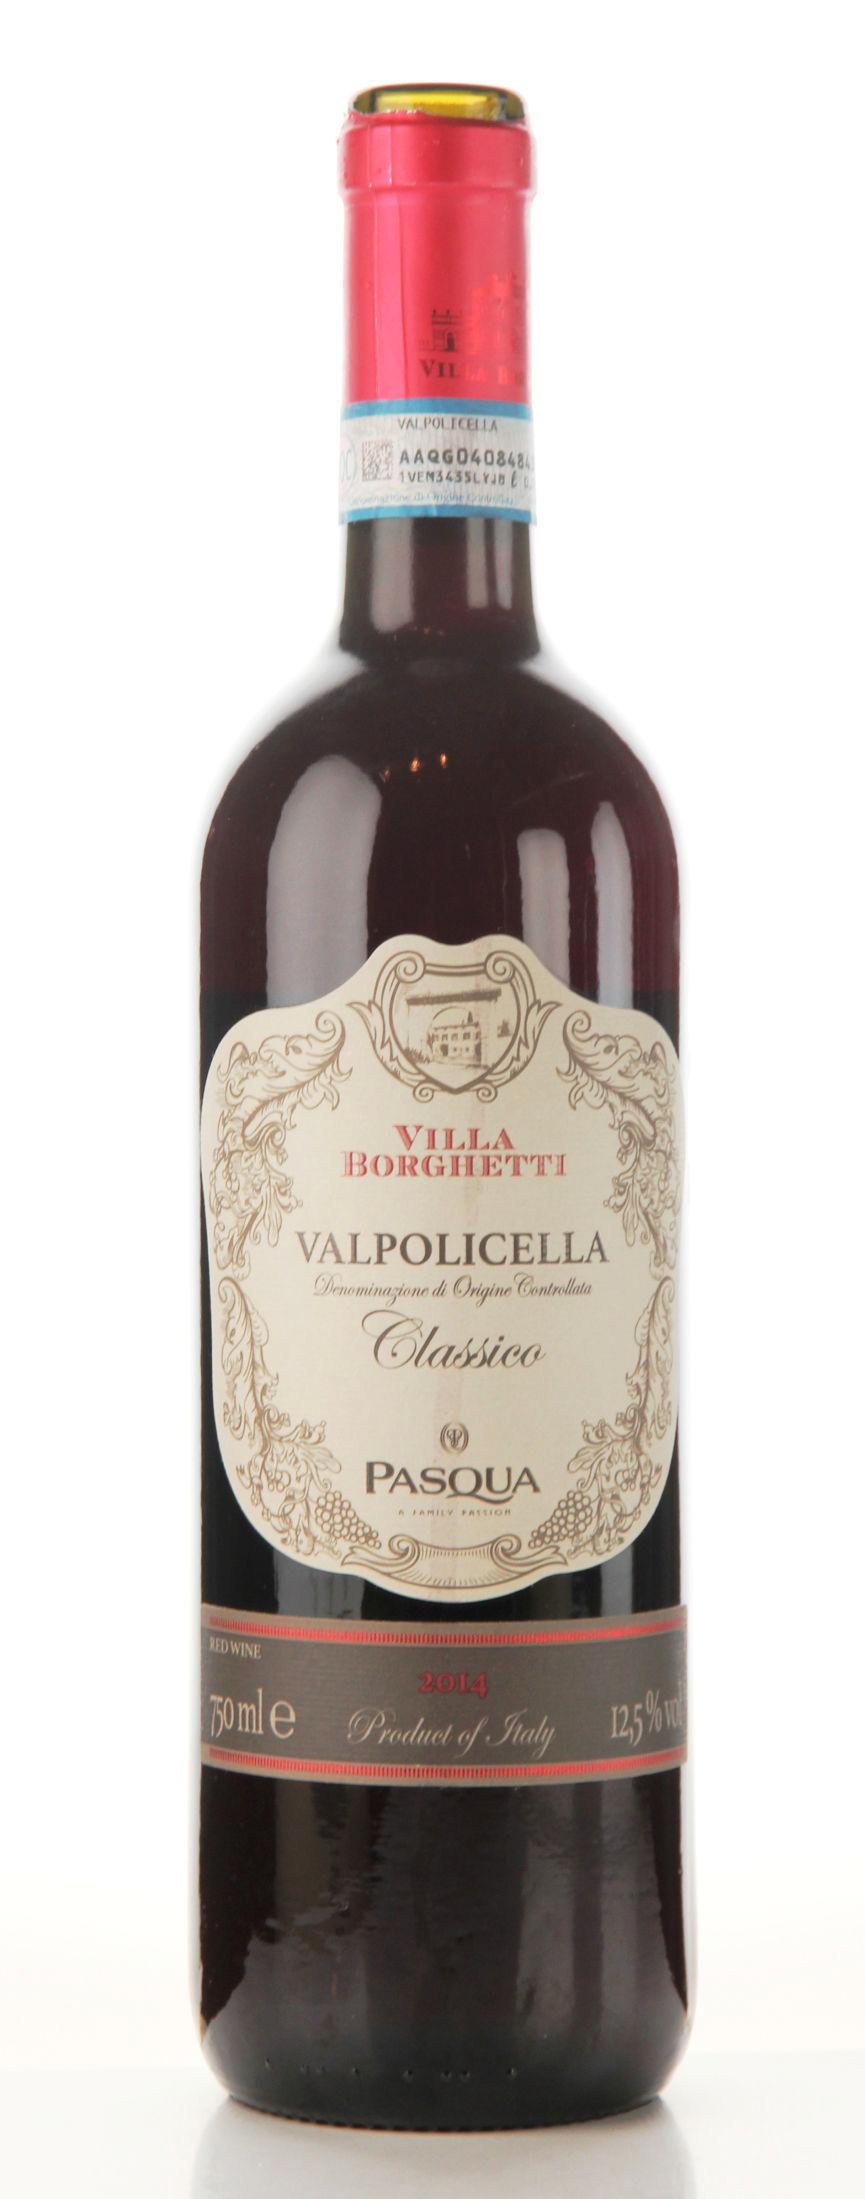 KARAKTER 6: Villa Borgetti Valpolicella Clssico 2014/2015 kan også drikkes til lette italienske matretter.